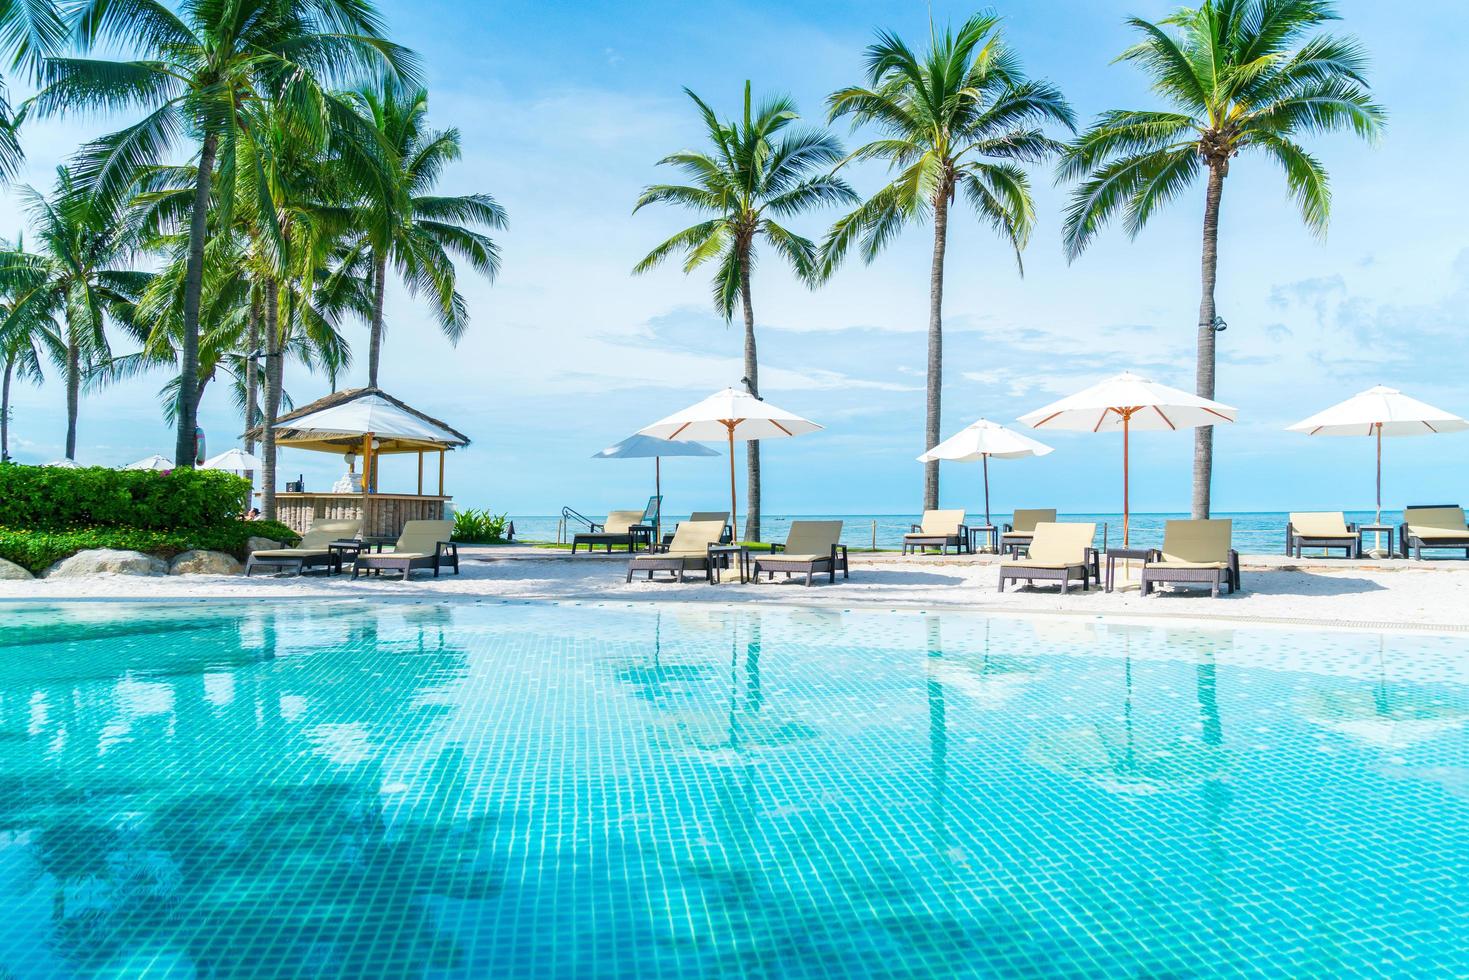 belle plage tropicale et mer avec parasol et chaise autour de la piscine de l'hôtel resort photo